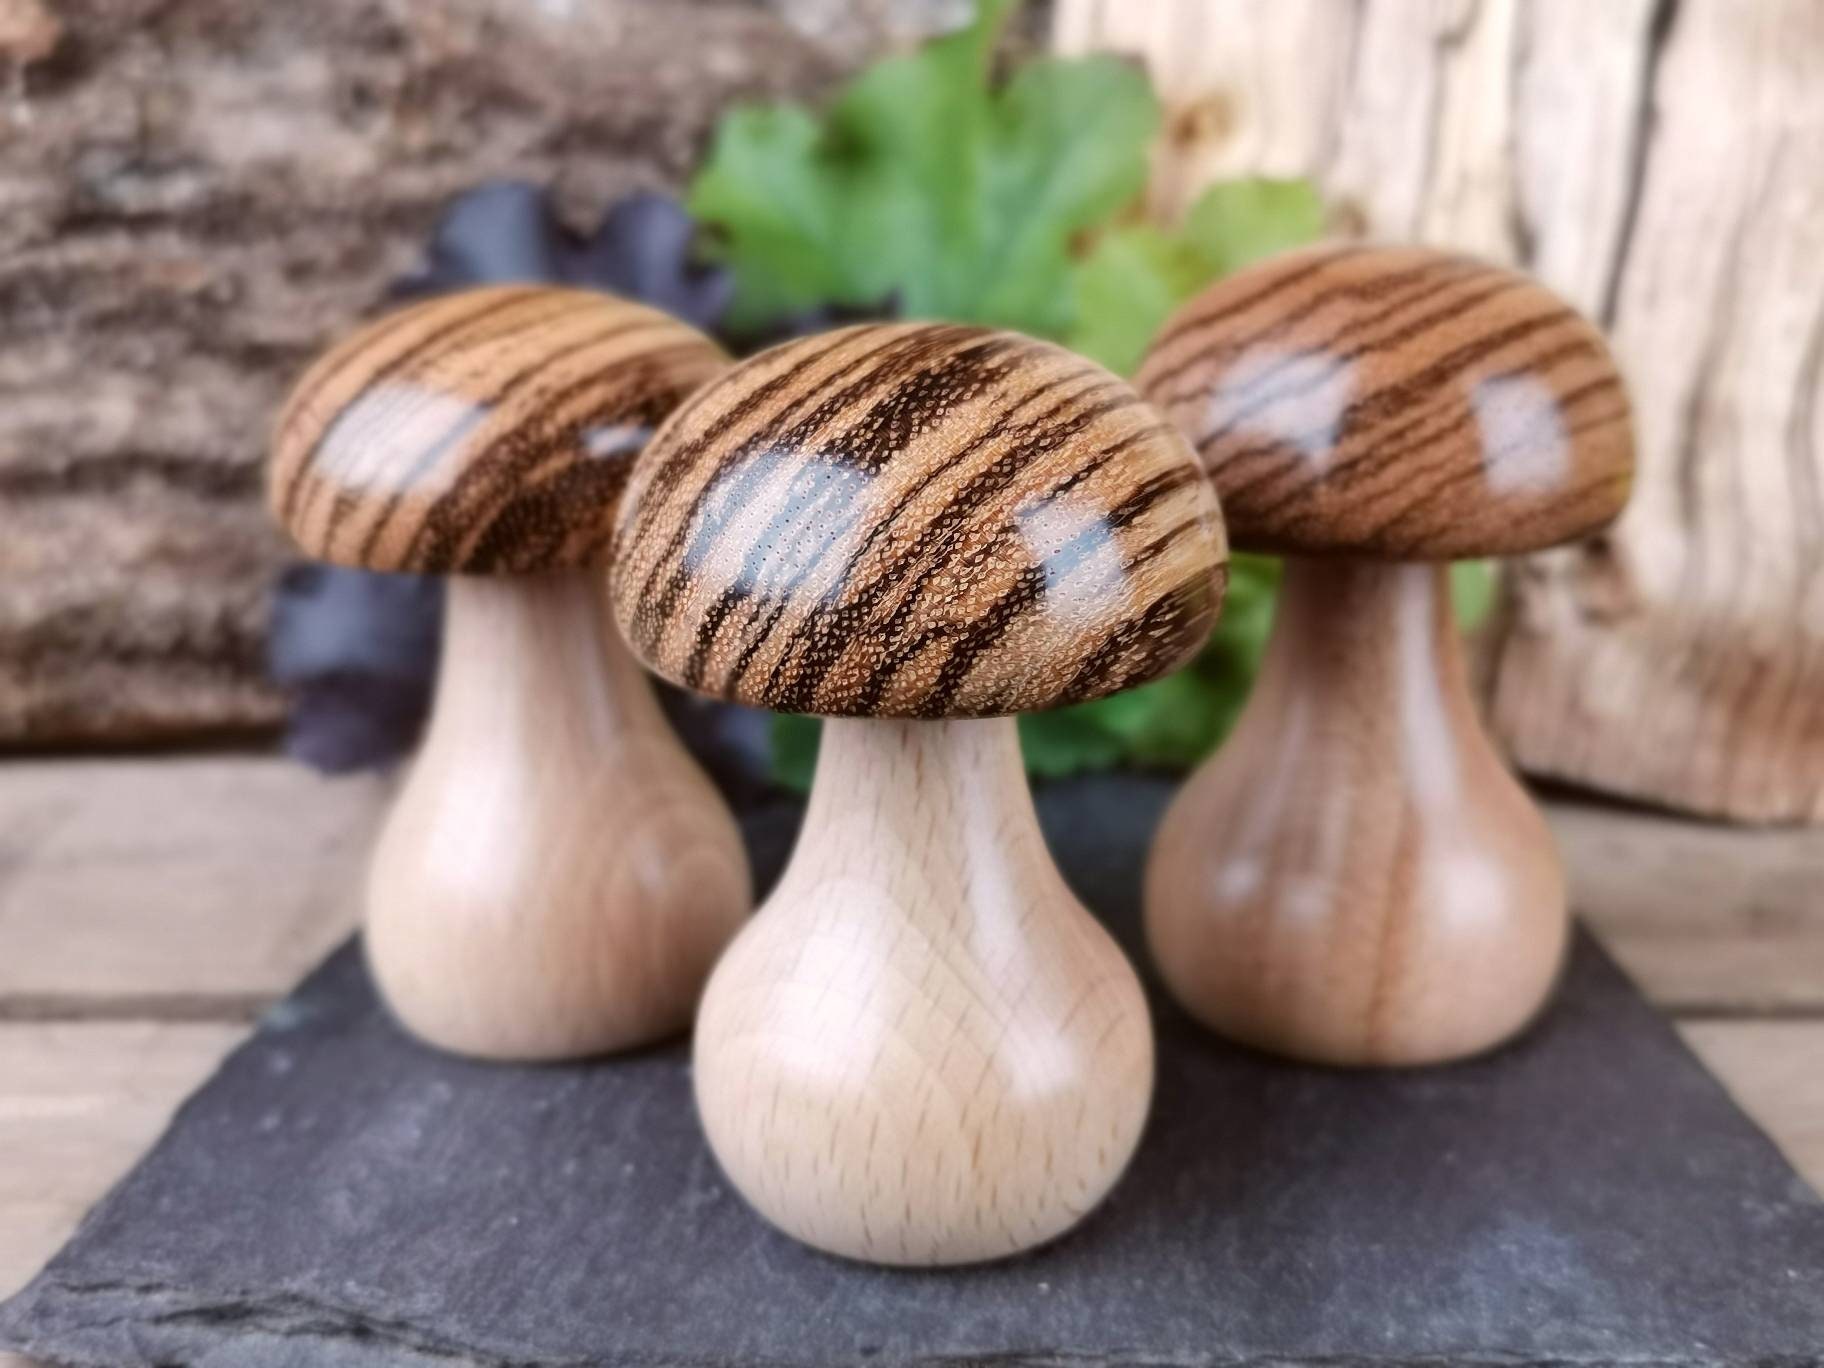 Wooden Darning Mushroom Smooth Wooden Mushroom Darner Speedweve